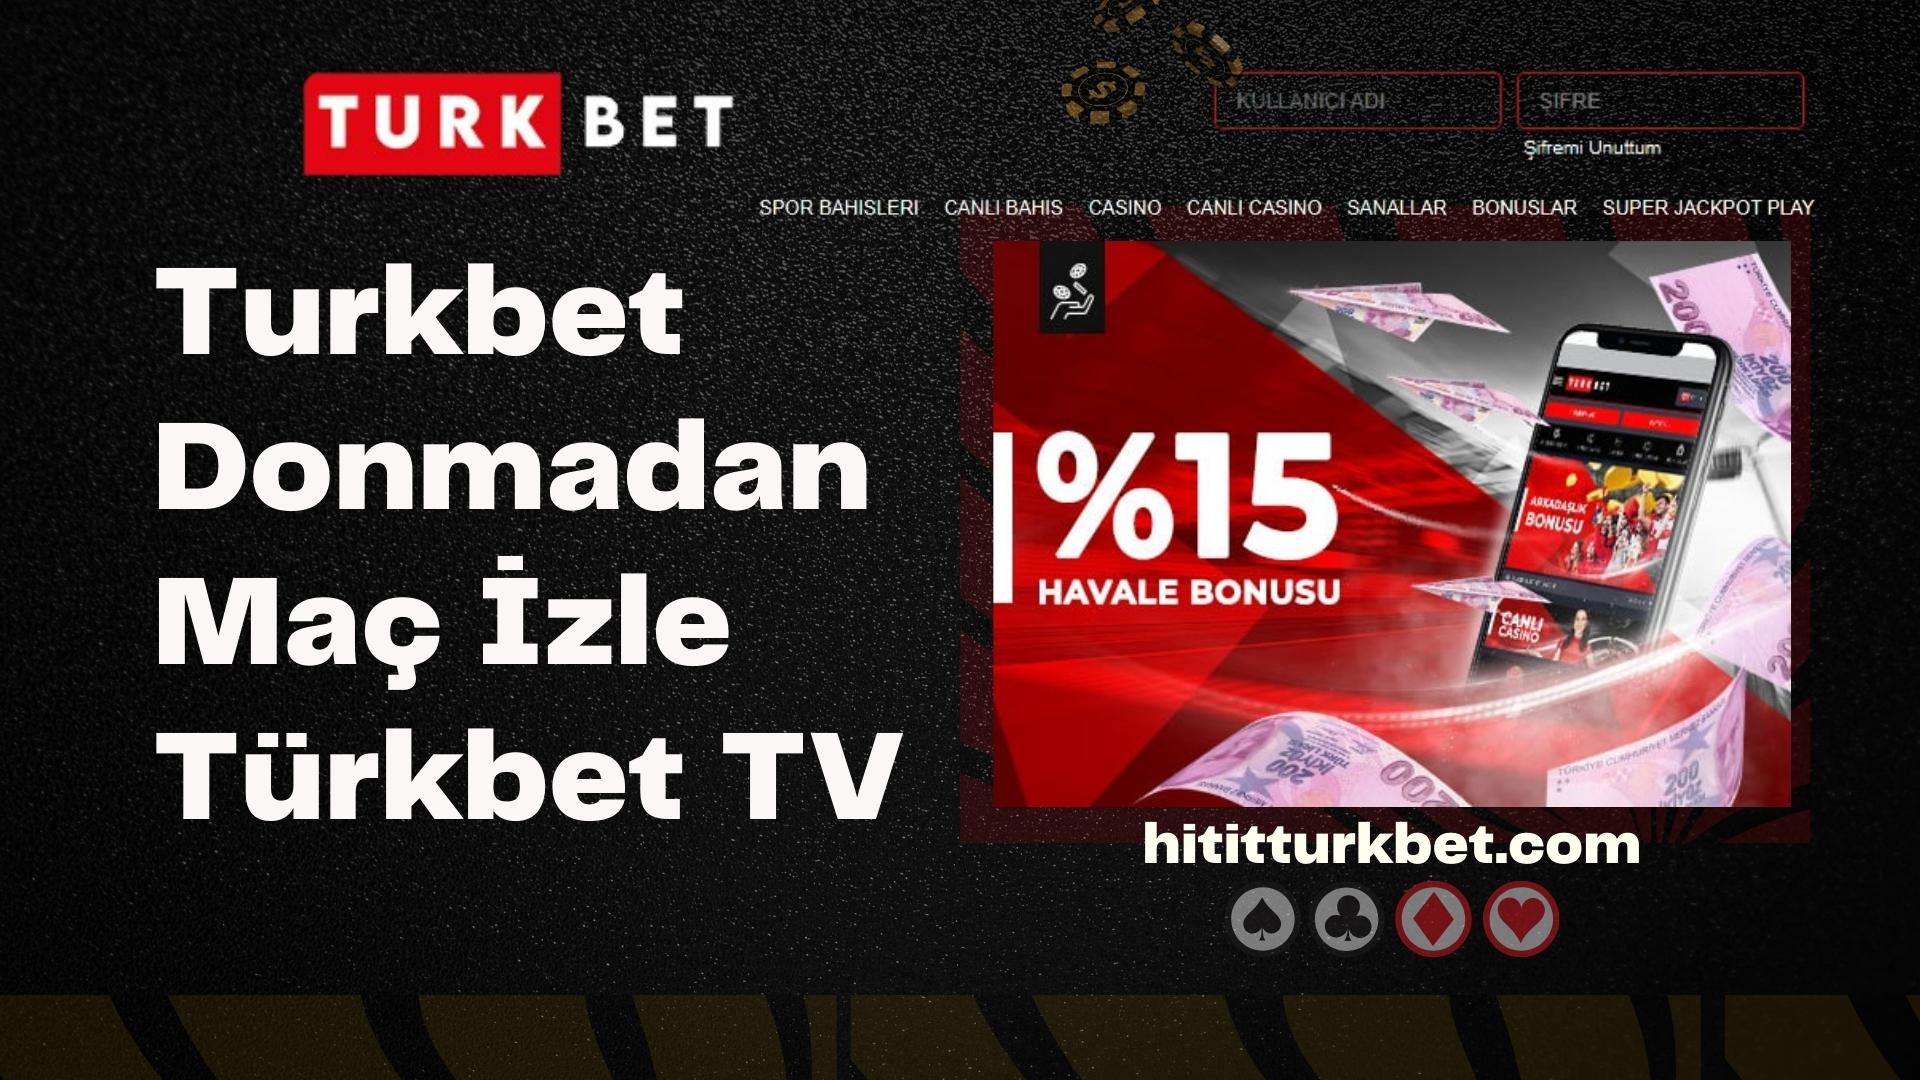 Turkbet Donmadan Maç İzle Türkbet TV